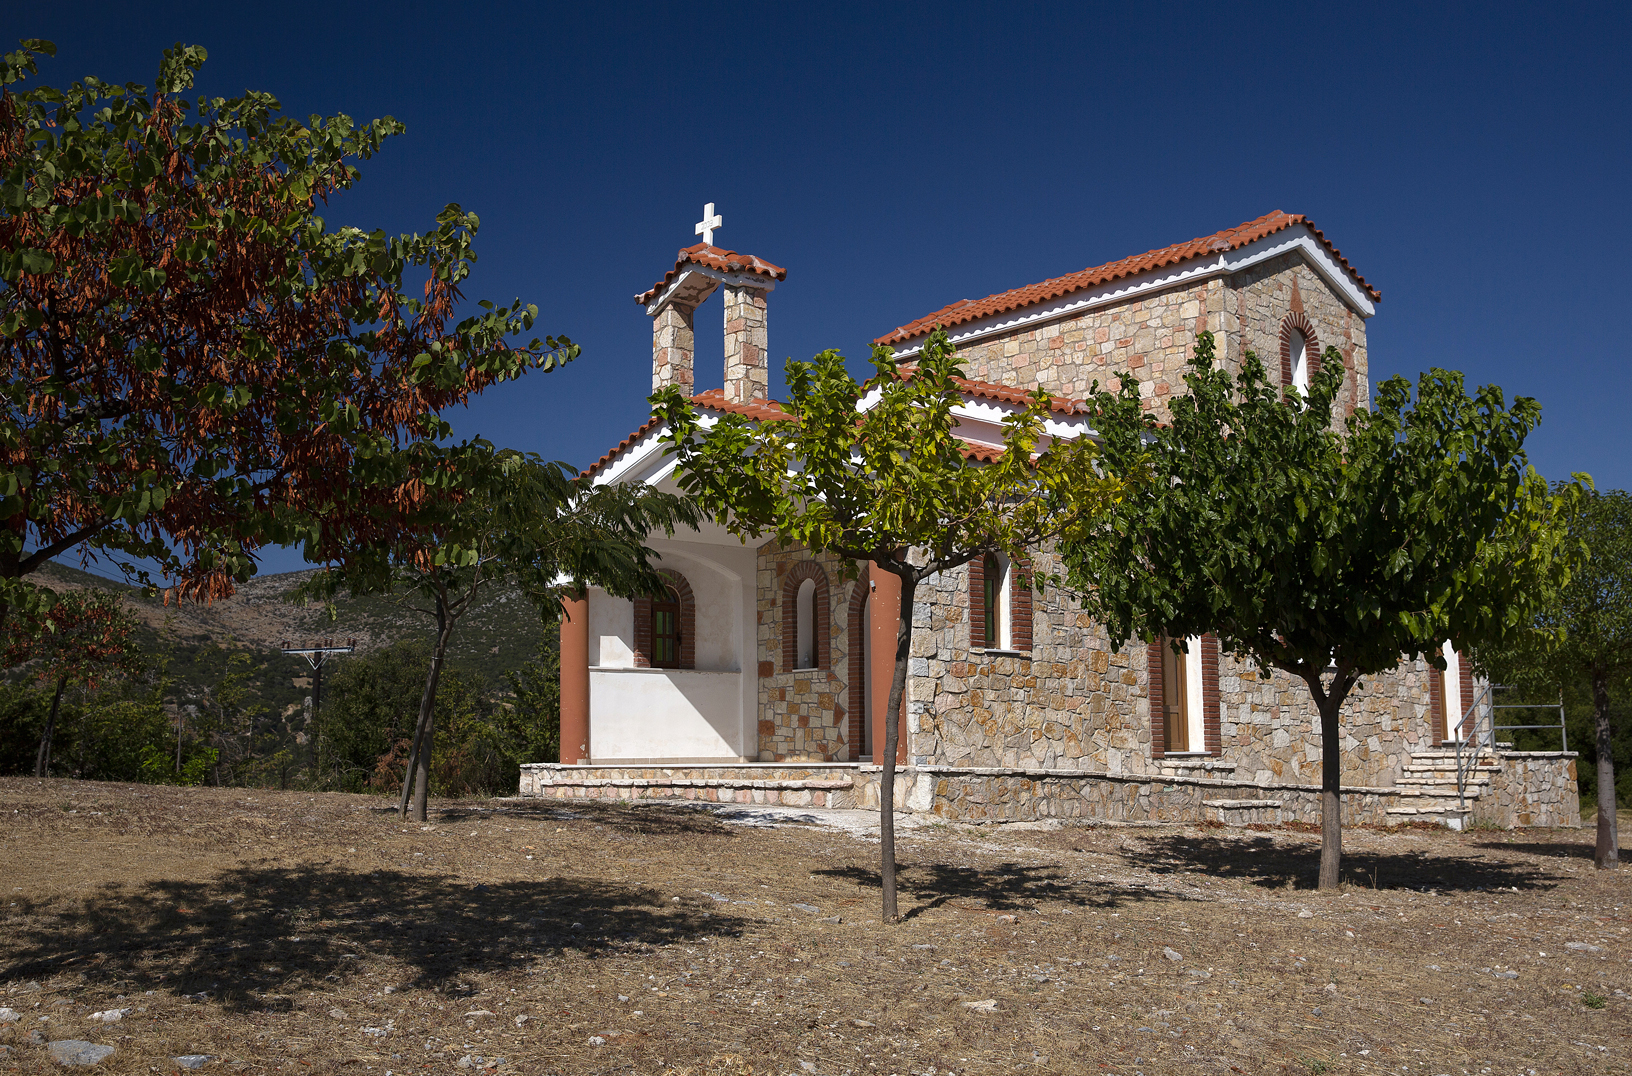 Εκκλησία Αγίου Νεκταρίου 2,5 χλμ από το χωριό Θαρούνια. Φωτογραφία: ©Βασίλης Συκάς, για τον Δήμο Κύμης-Αλιβερίου